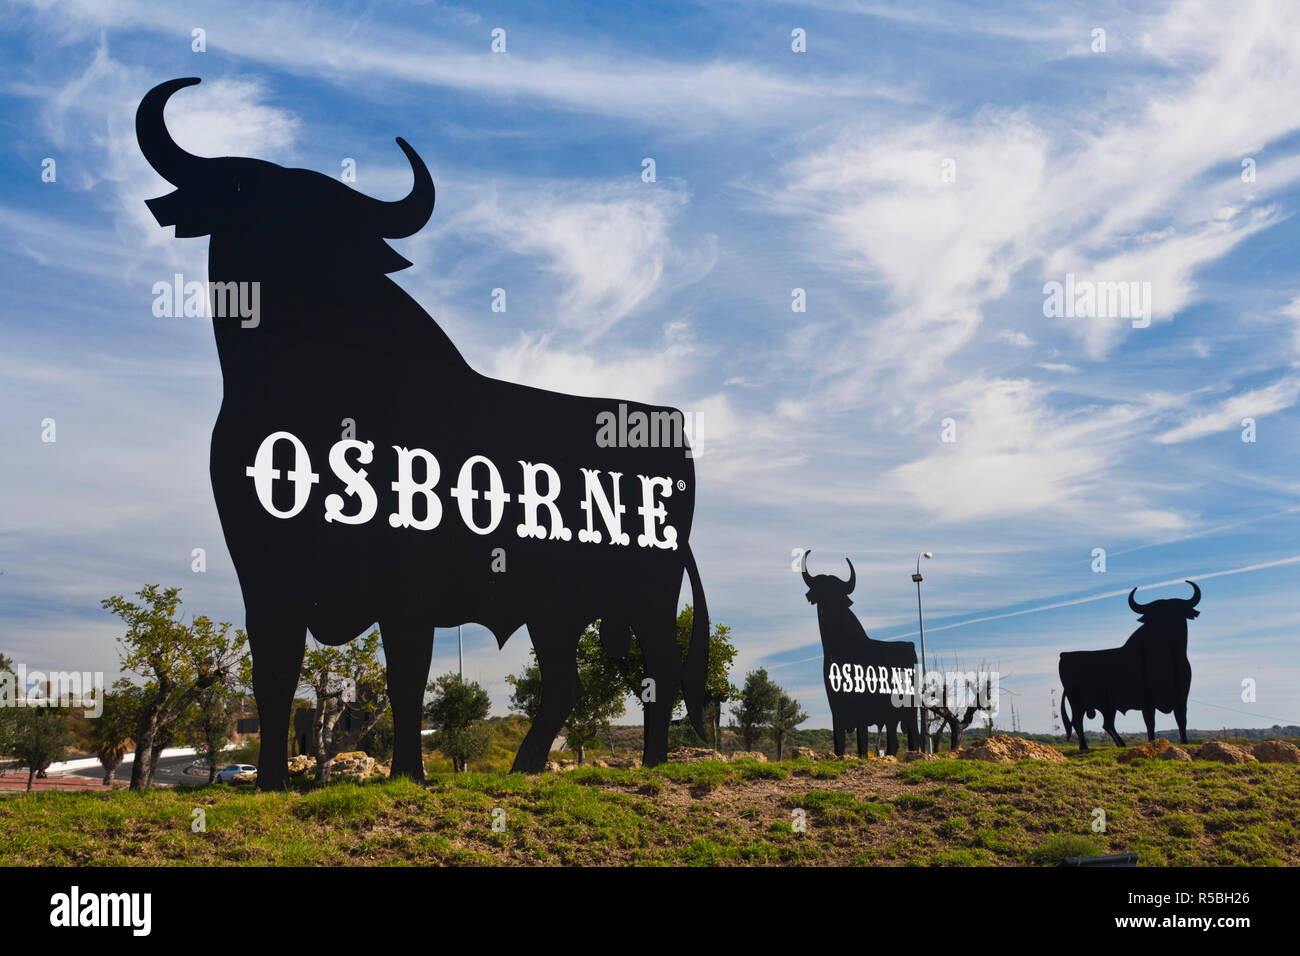 Spanien, Andalusien, Provinz Cadiz, Sherry-Dreieck, El Puerto De Santa Maria, Welt berühmten Bull Symbole von der Bodegas Osborne, Sherry-Produzenten Stockfoto